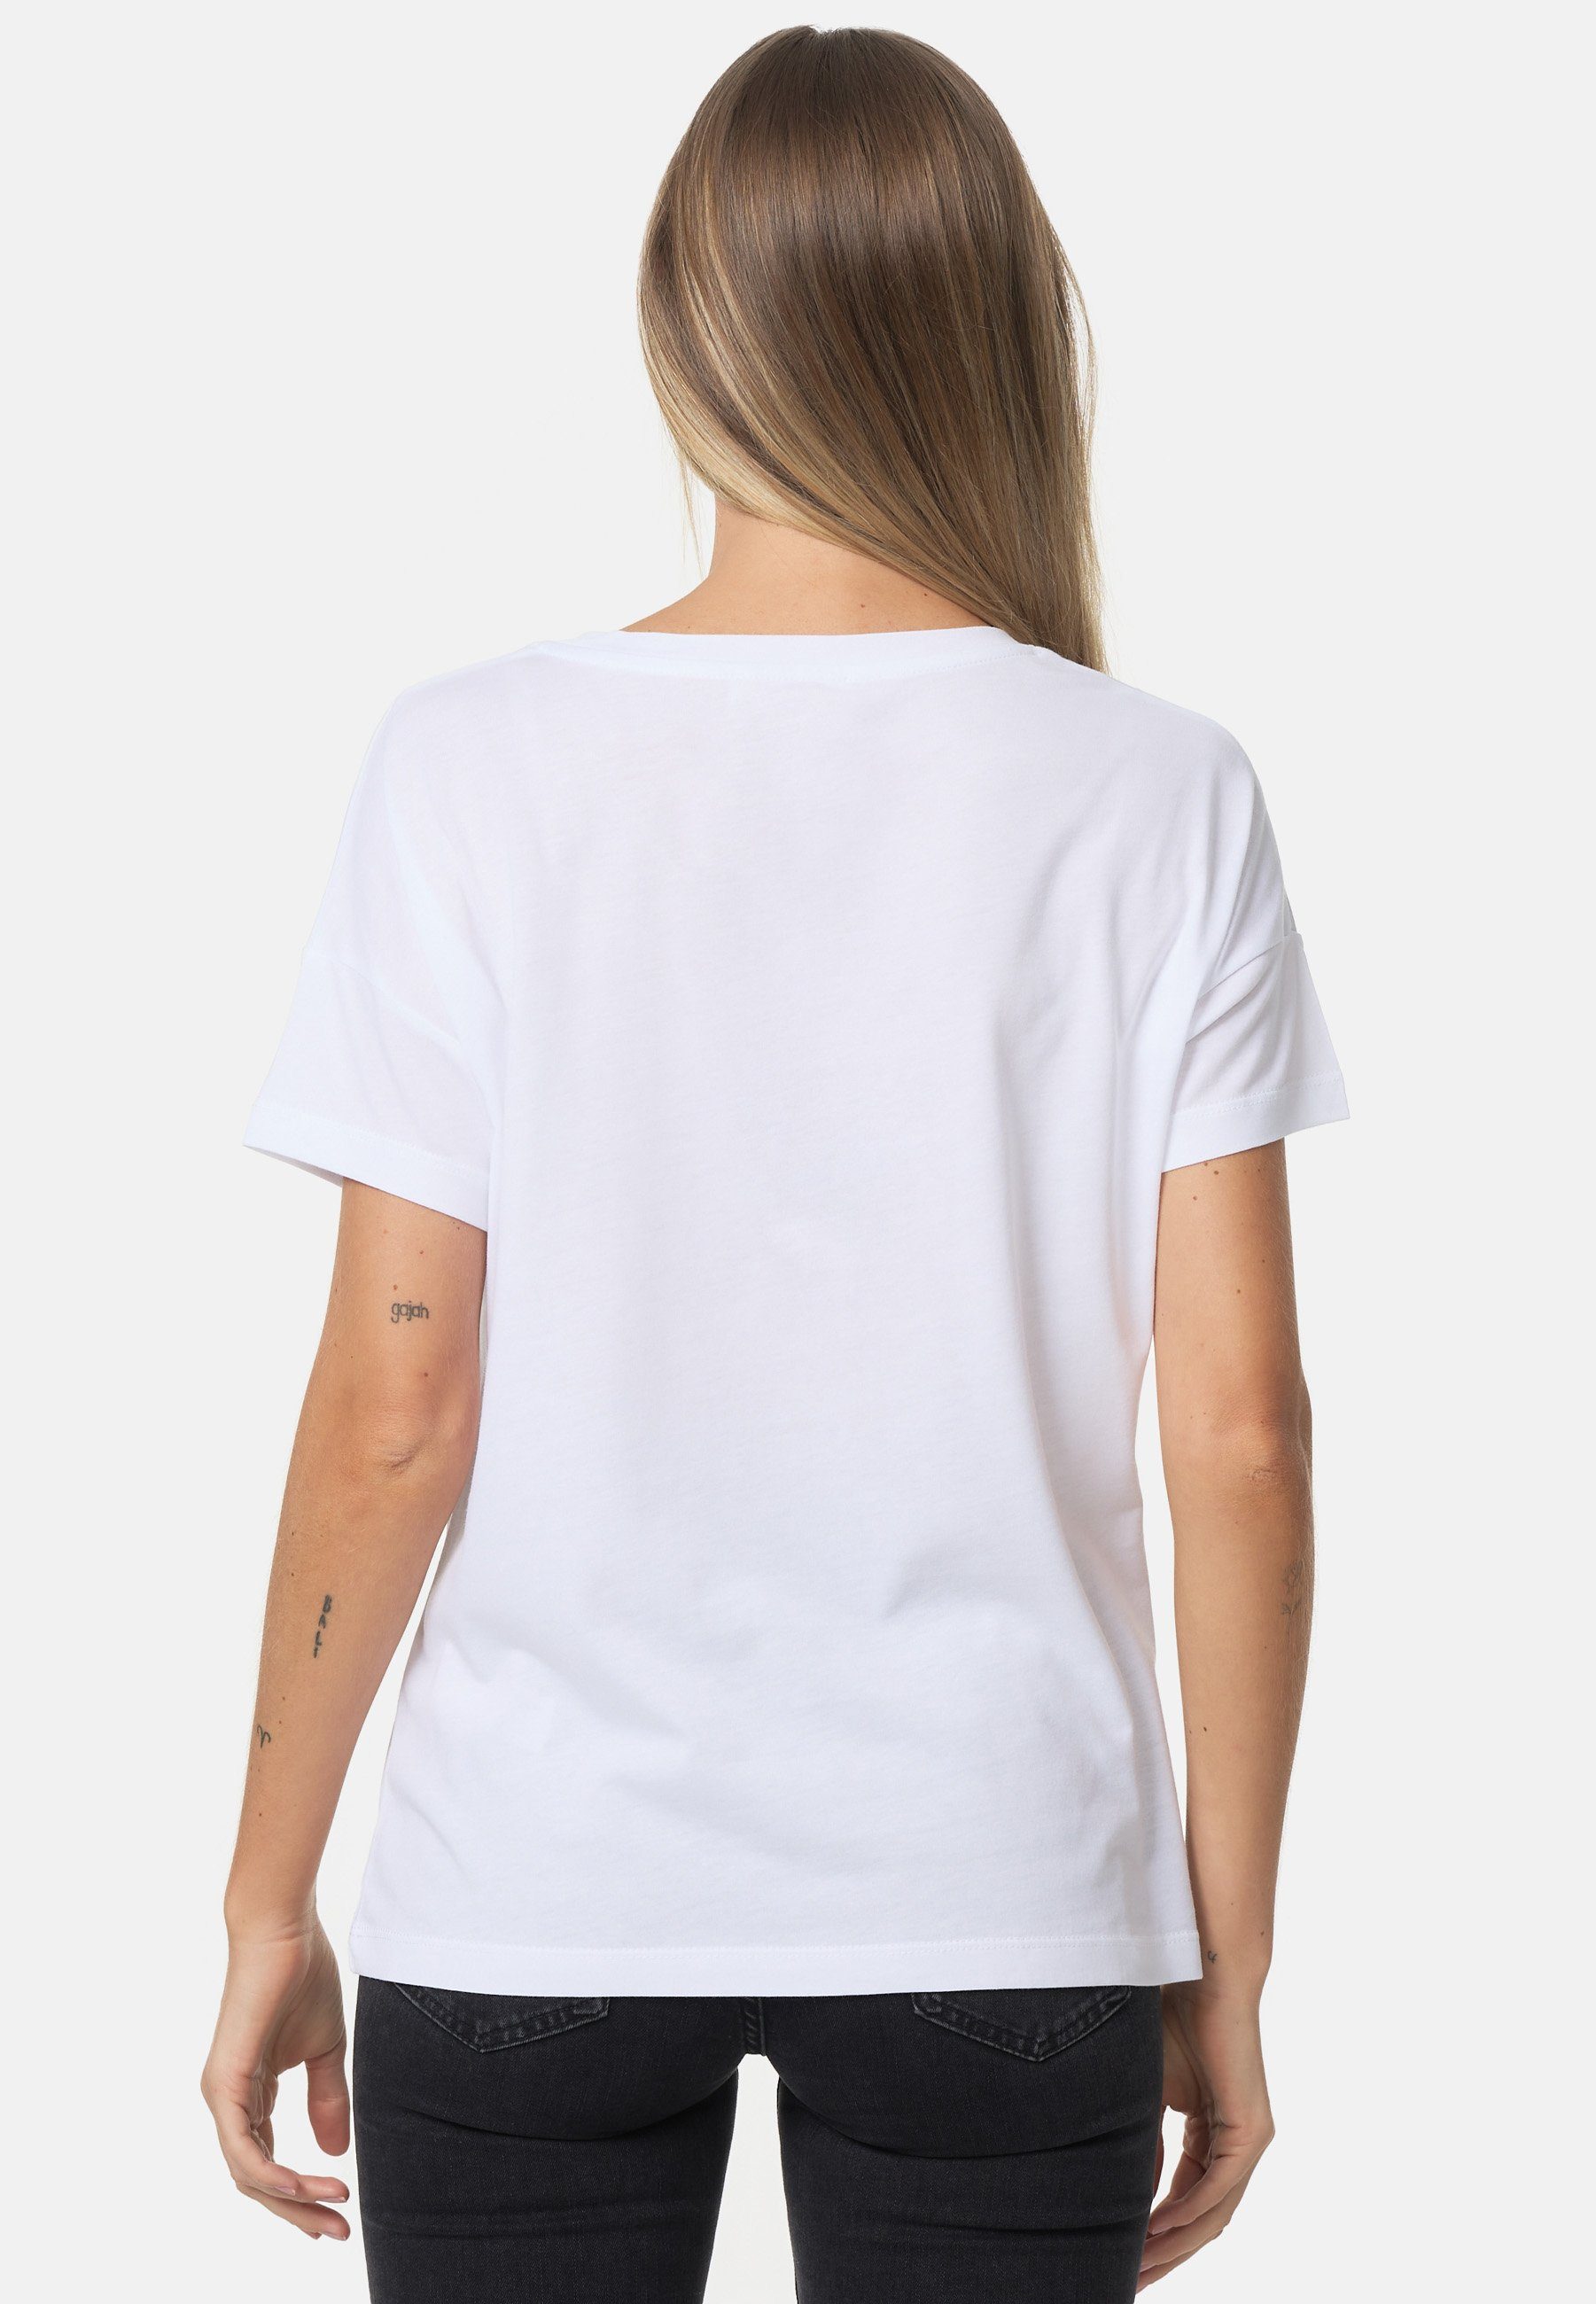 schönem T-Shirt weiß-mehrfarbig Decay mit Herz-Print